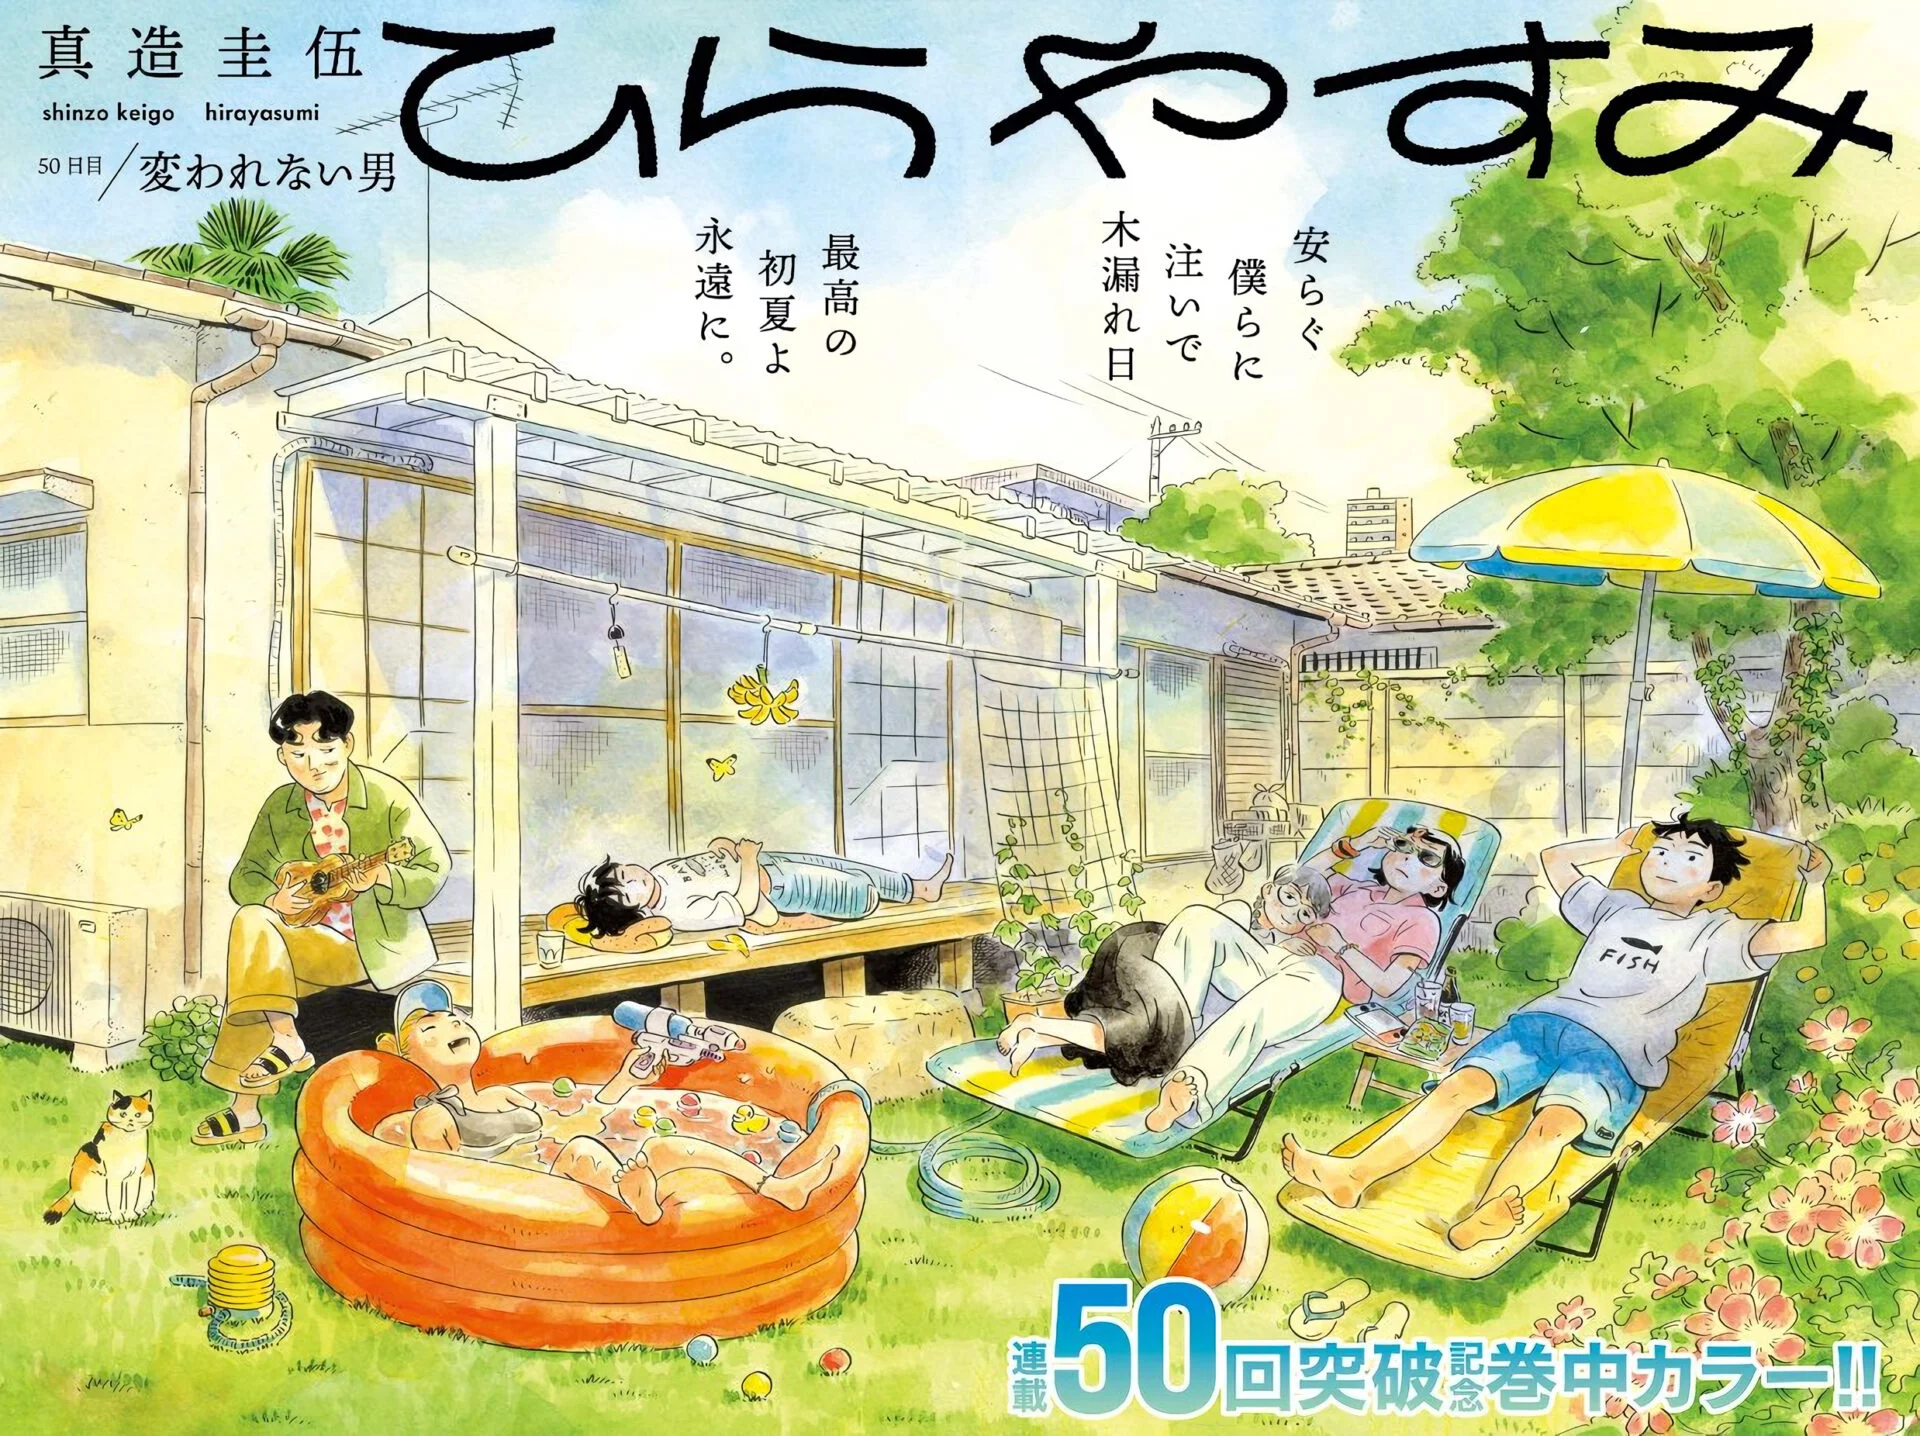 il manga Hirayasumi è un perfetto slice of life che rilassa il lettore. 